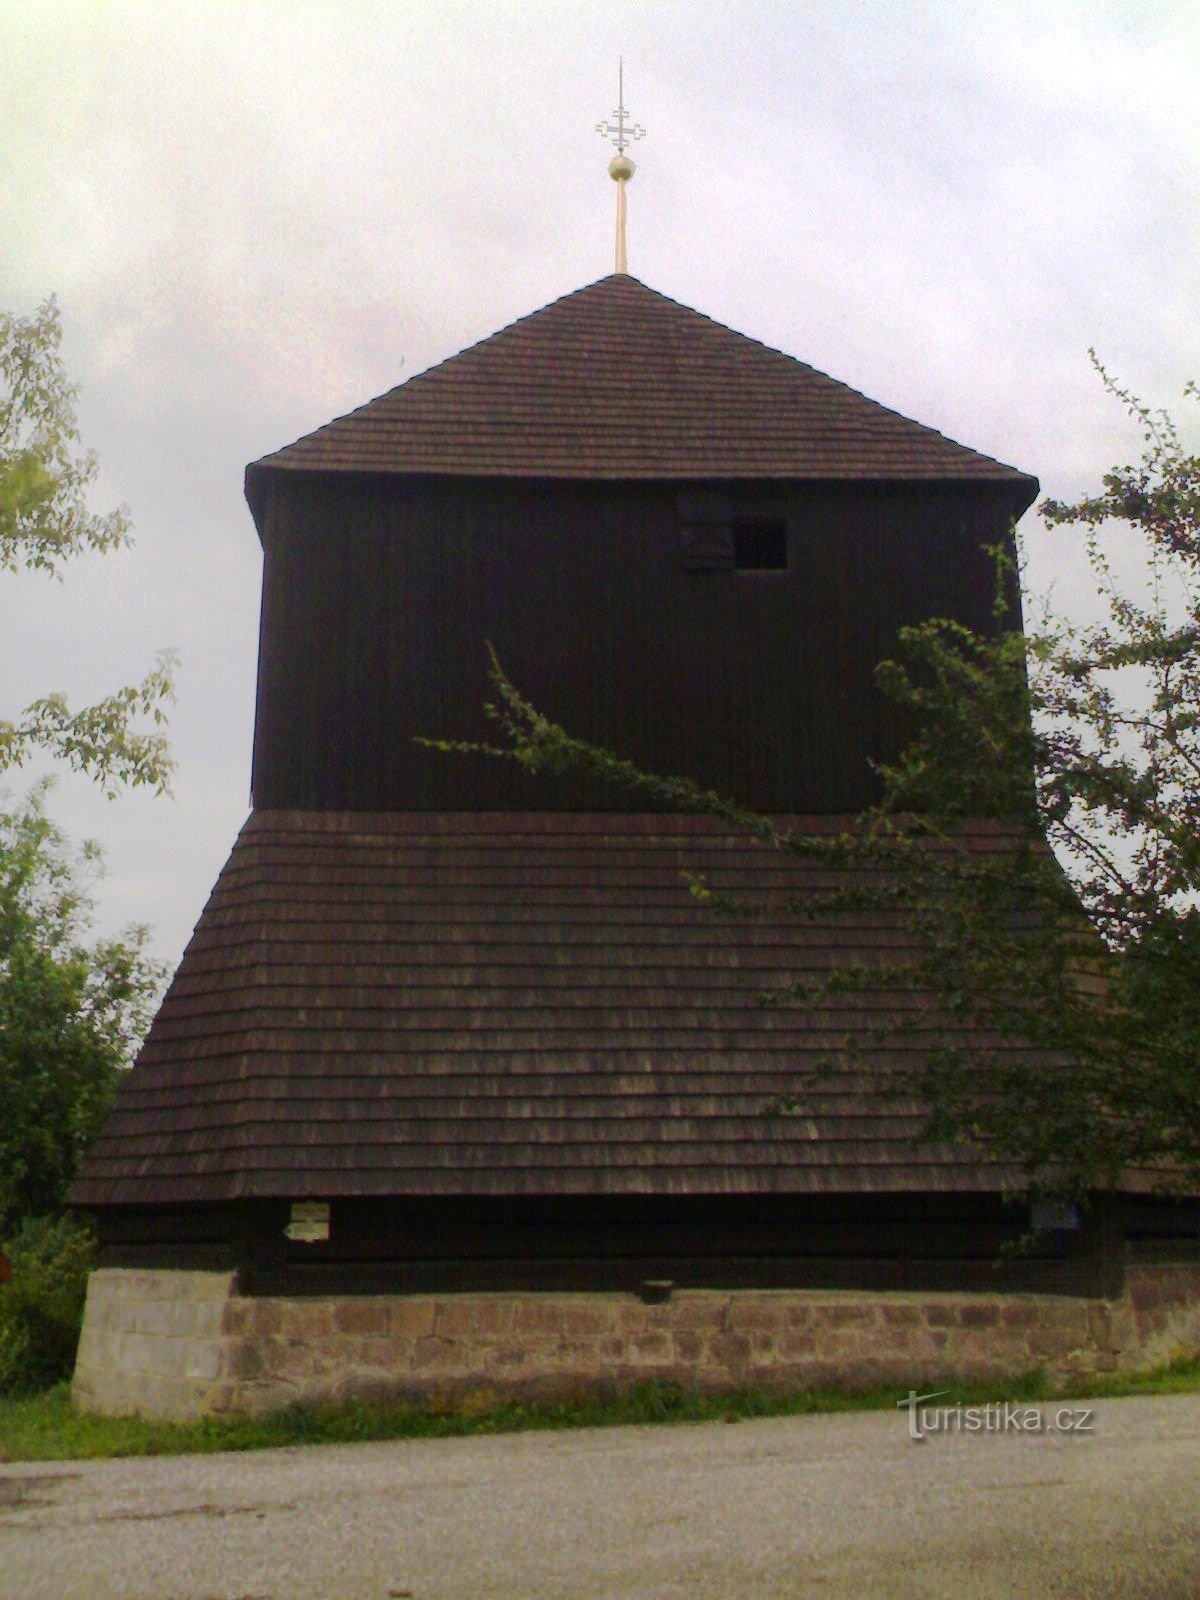 Rovensko pod Troskami - klokketårn i træ